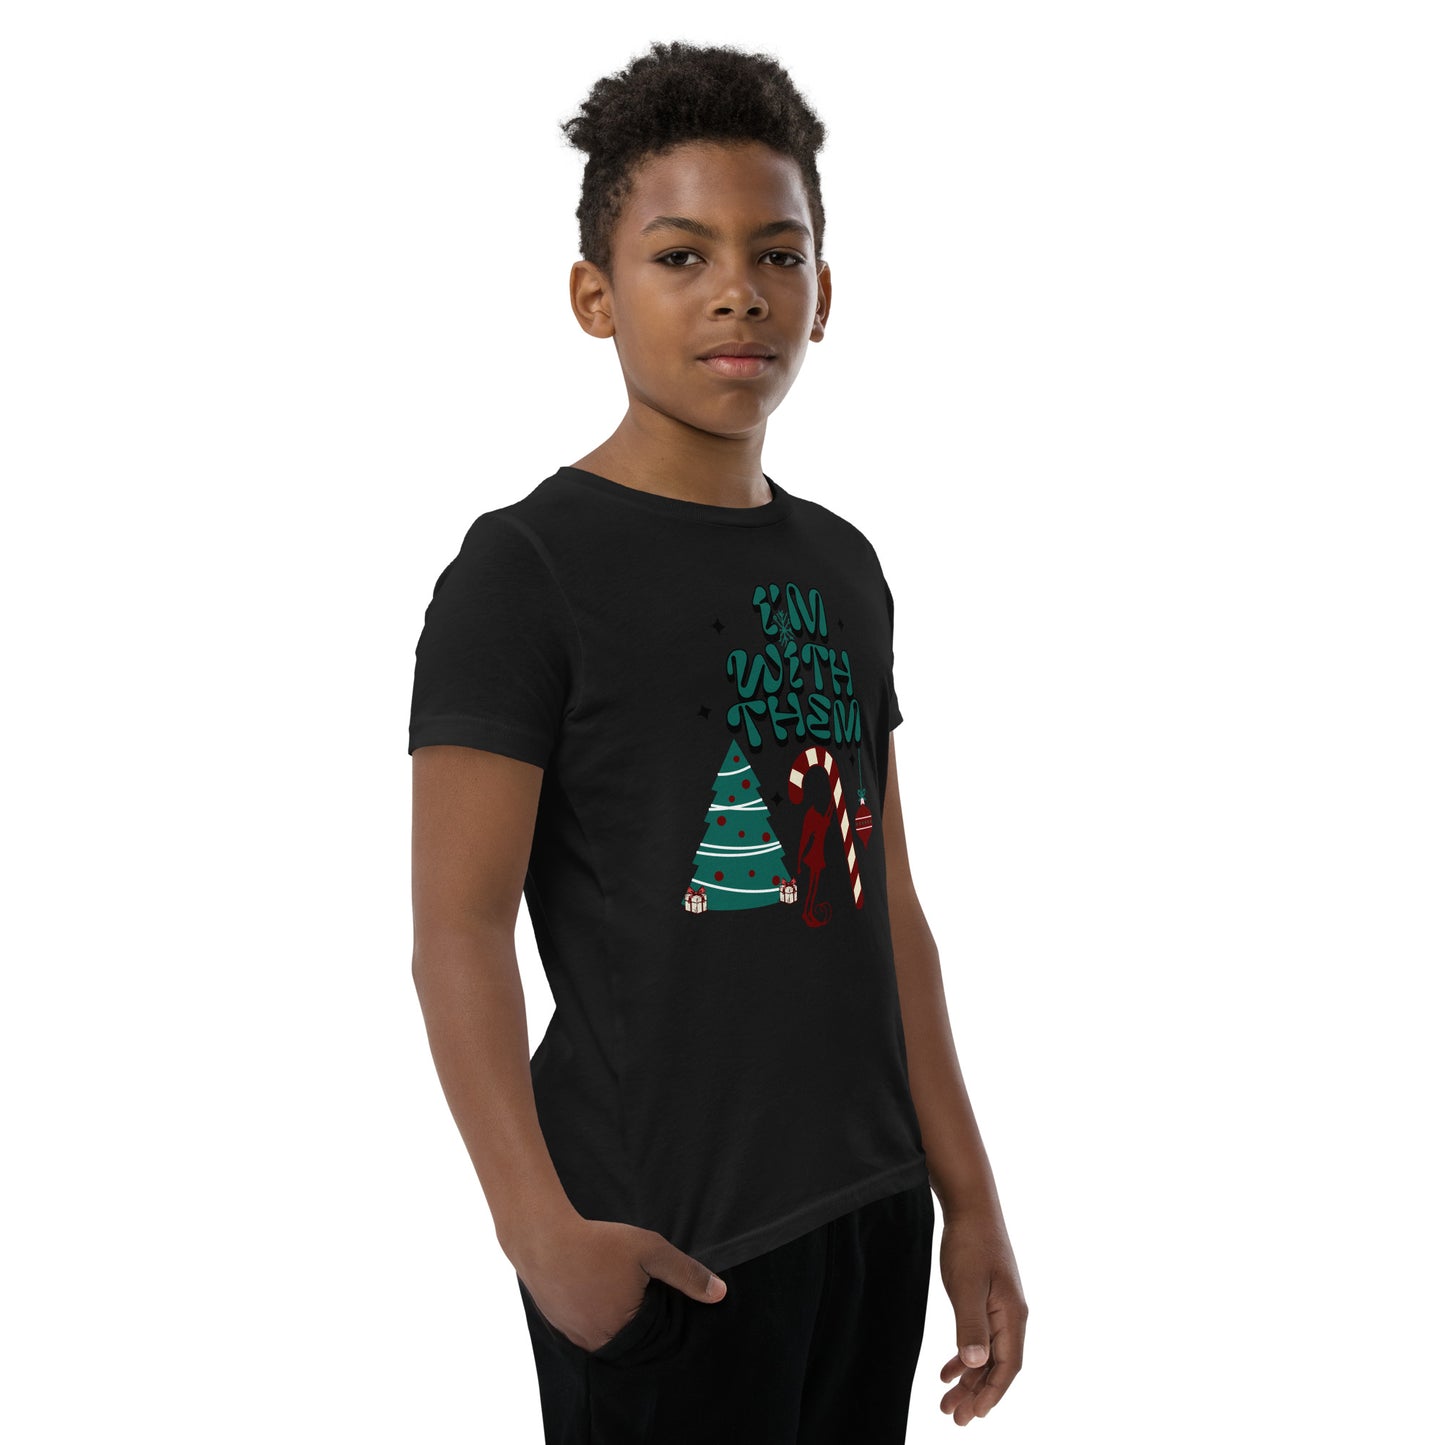 Camiseta juvenil de Navidad: ¡ESTOY CON ELLOS!